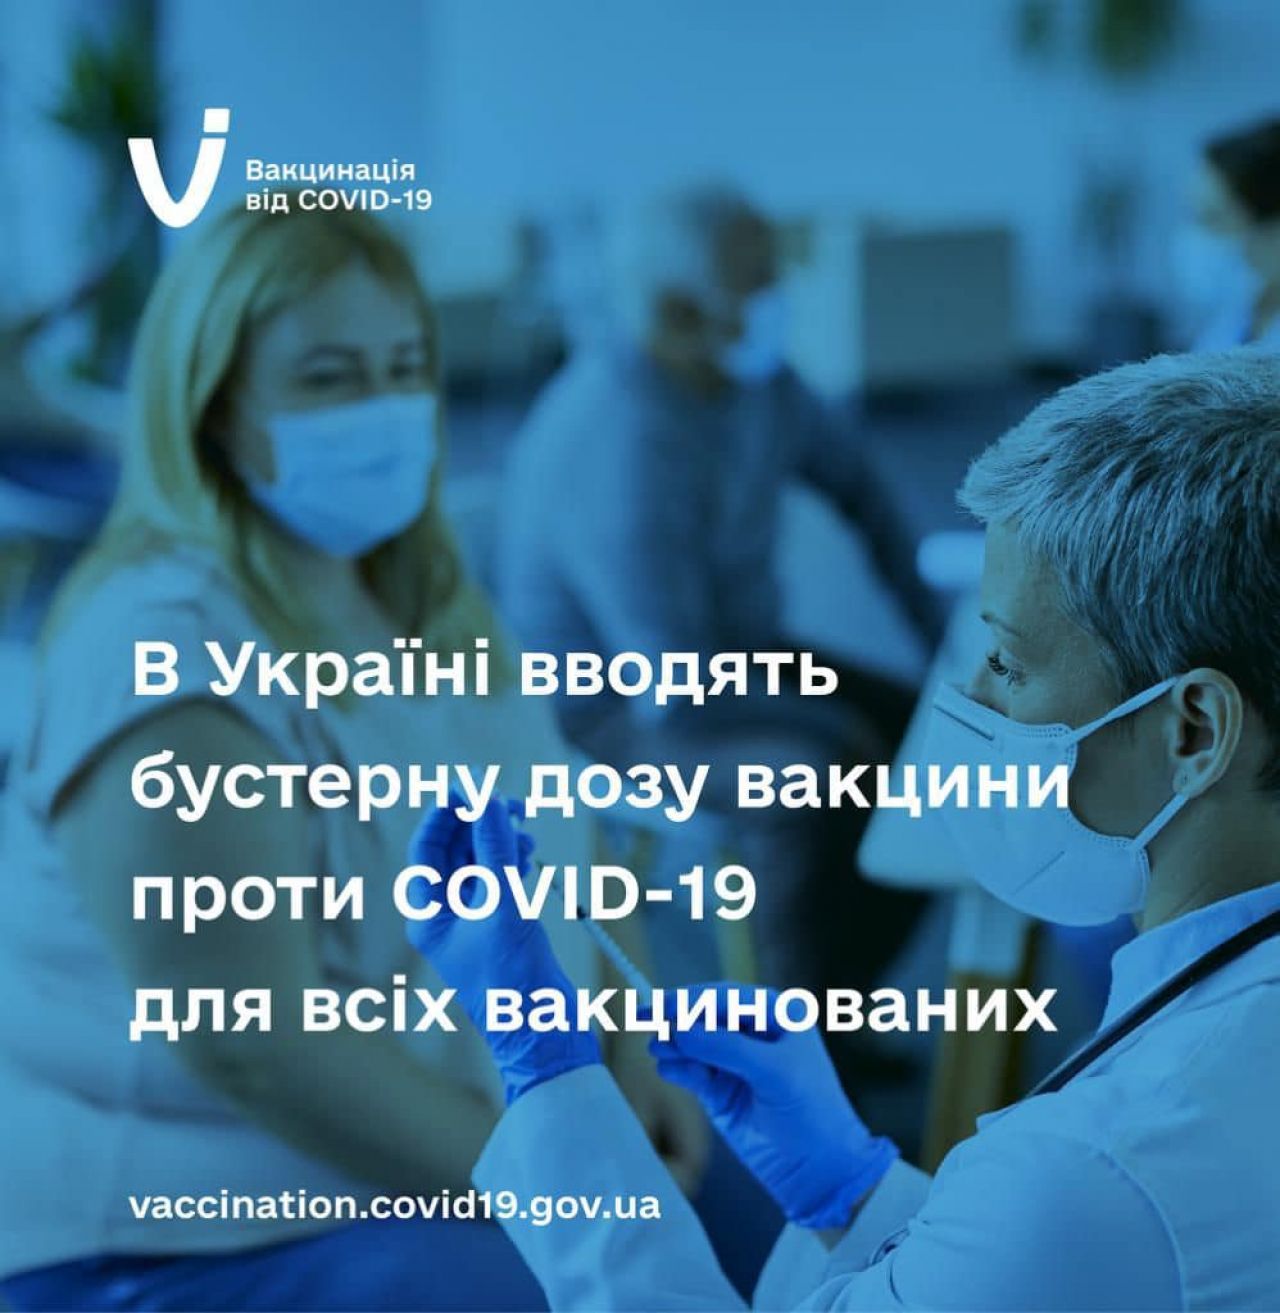 В Україні дозволили бустерну дозу вакцини проти COVID-19 для всіх вакцинованих осіб віком від 18 років